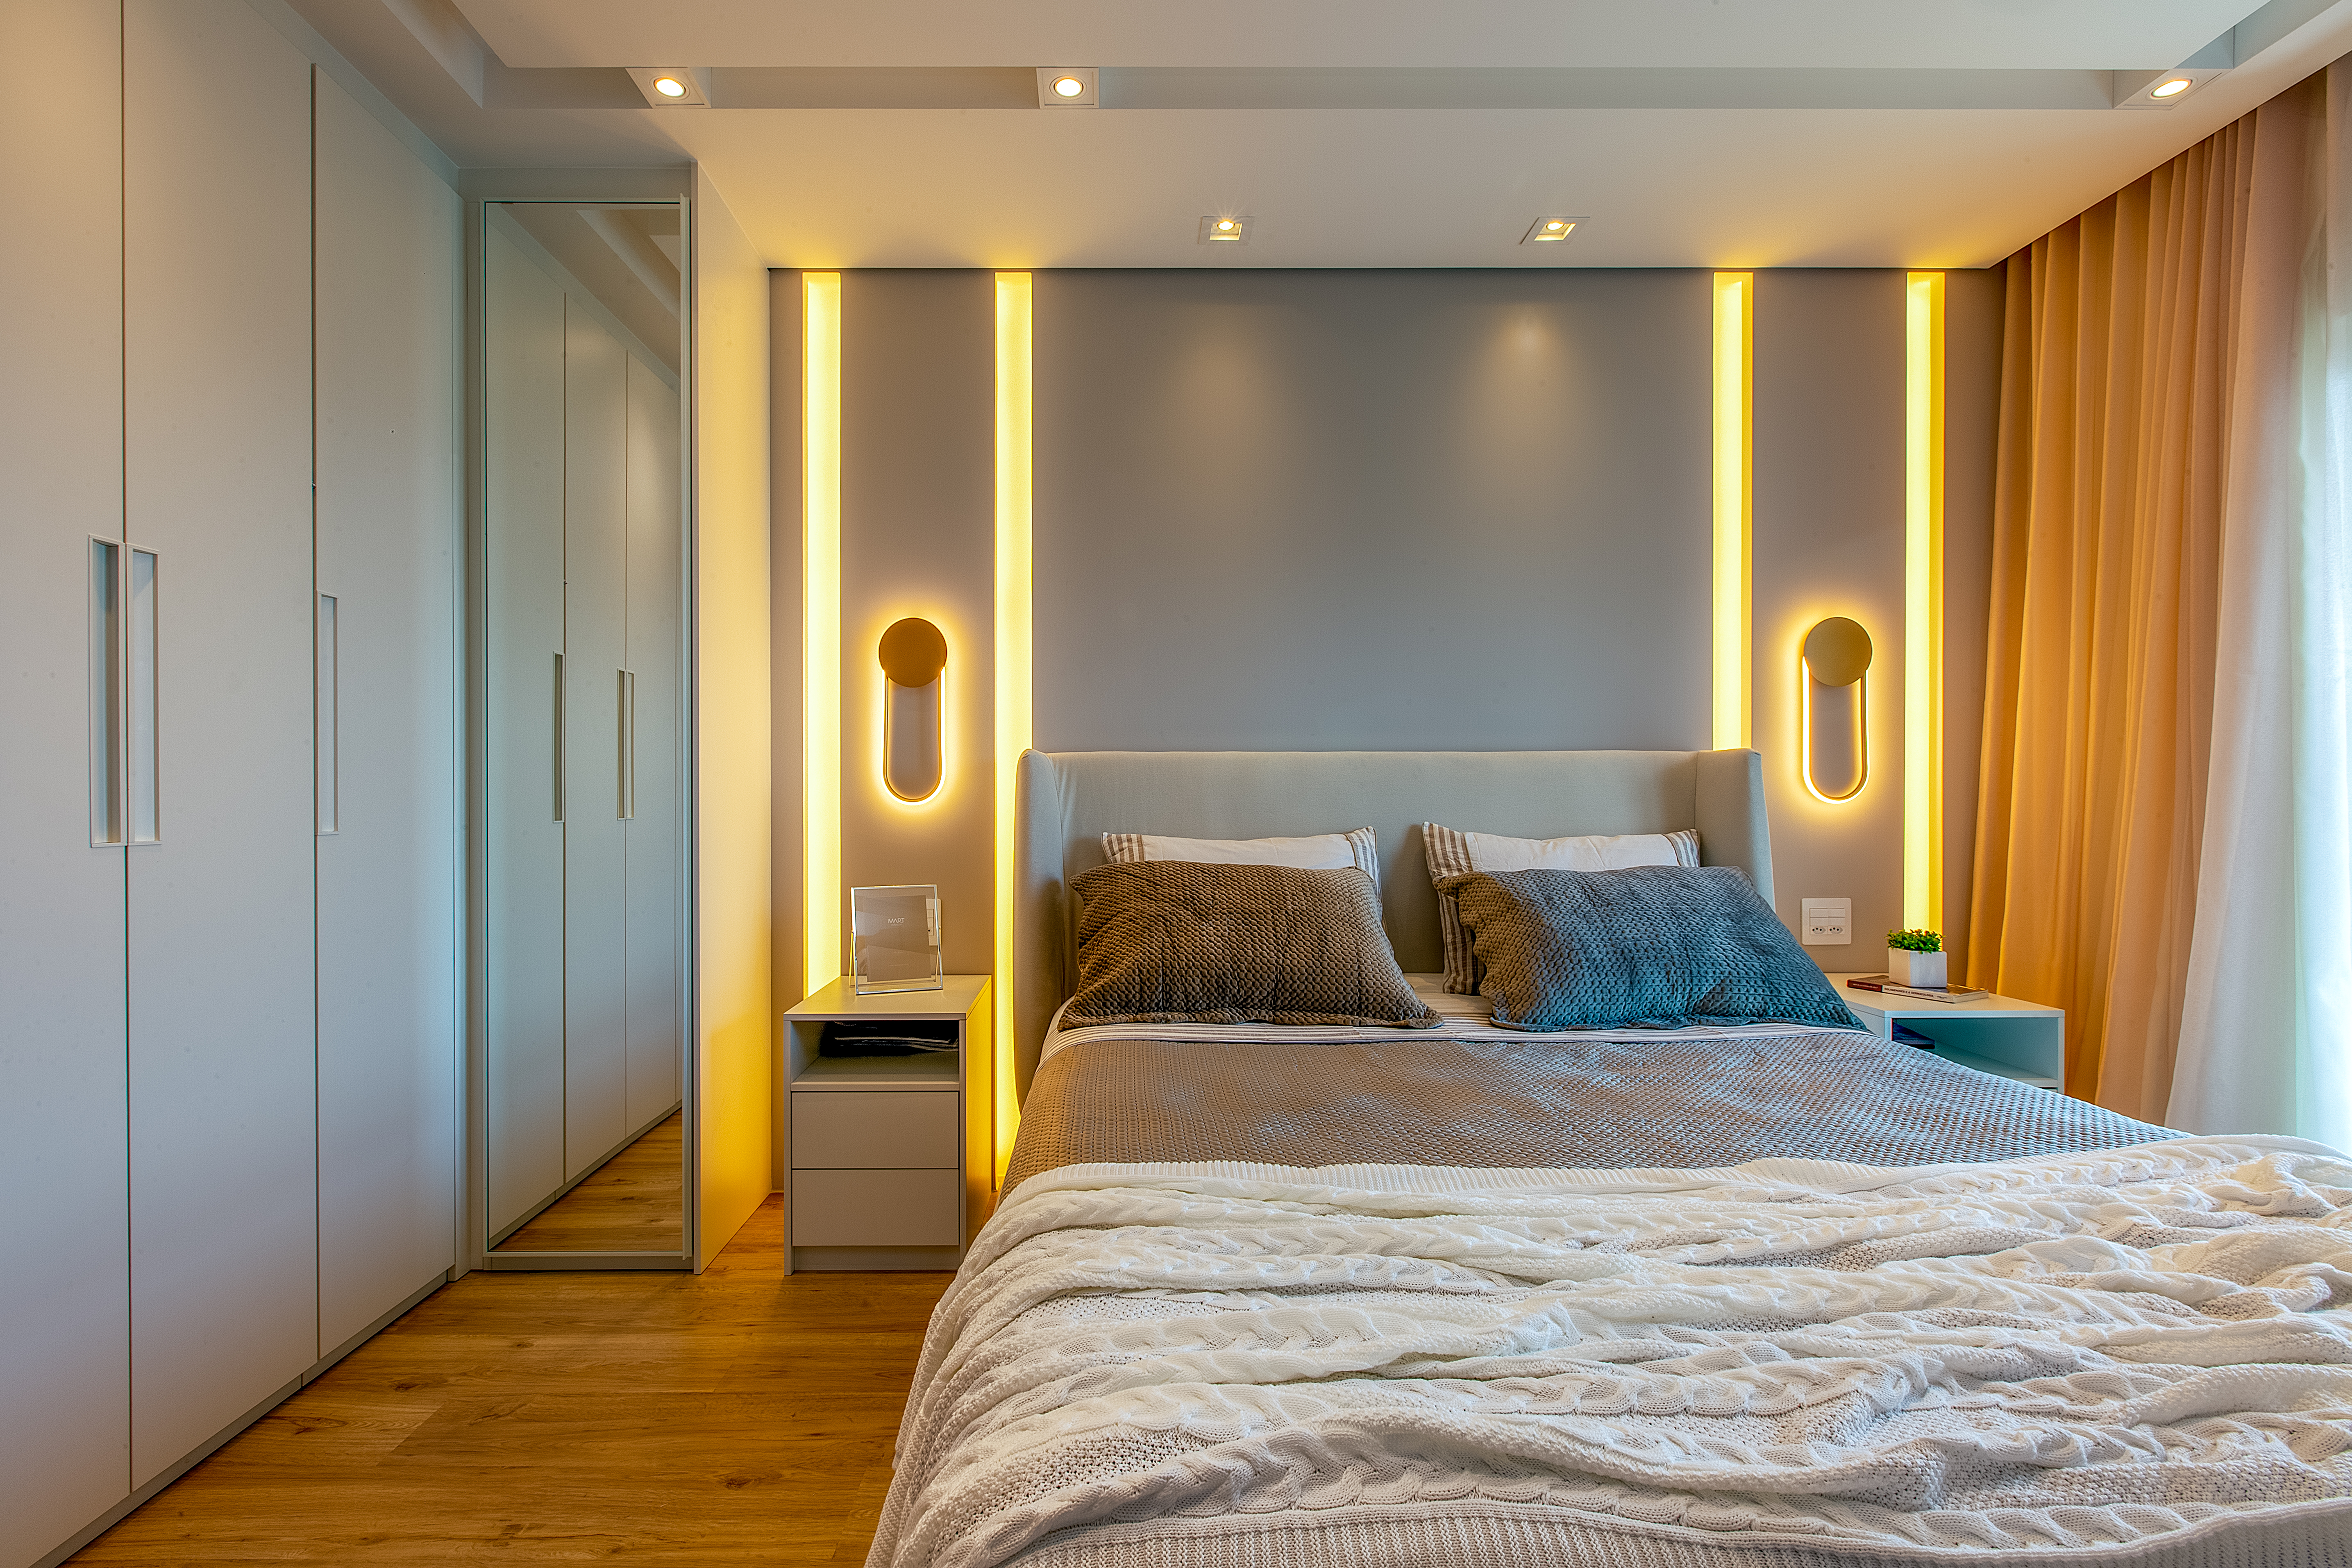 Projeto de Luciana Patriarcha. Na foto, quarto com cabeceira curva acolchoada e iluminação de LED. Arandelas ao lado da cama.